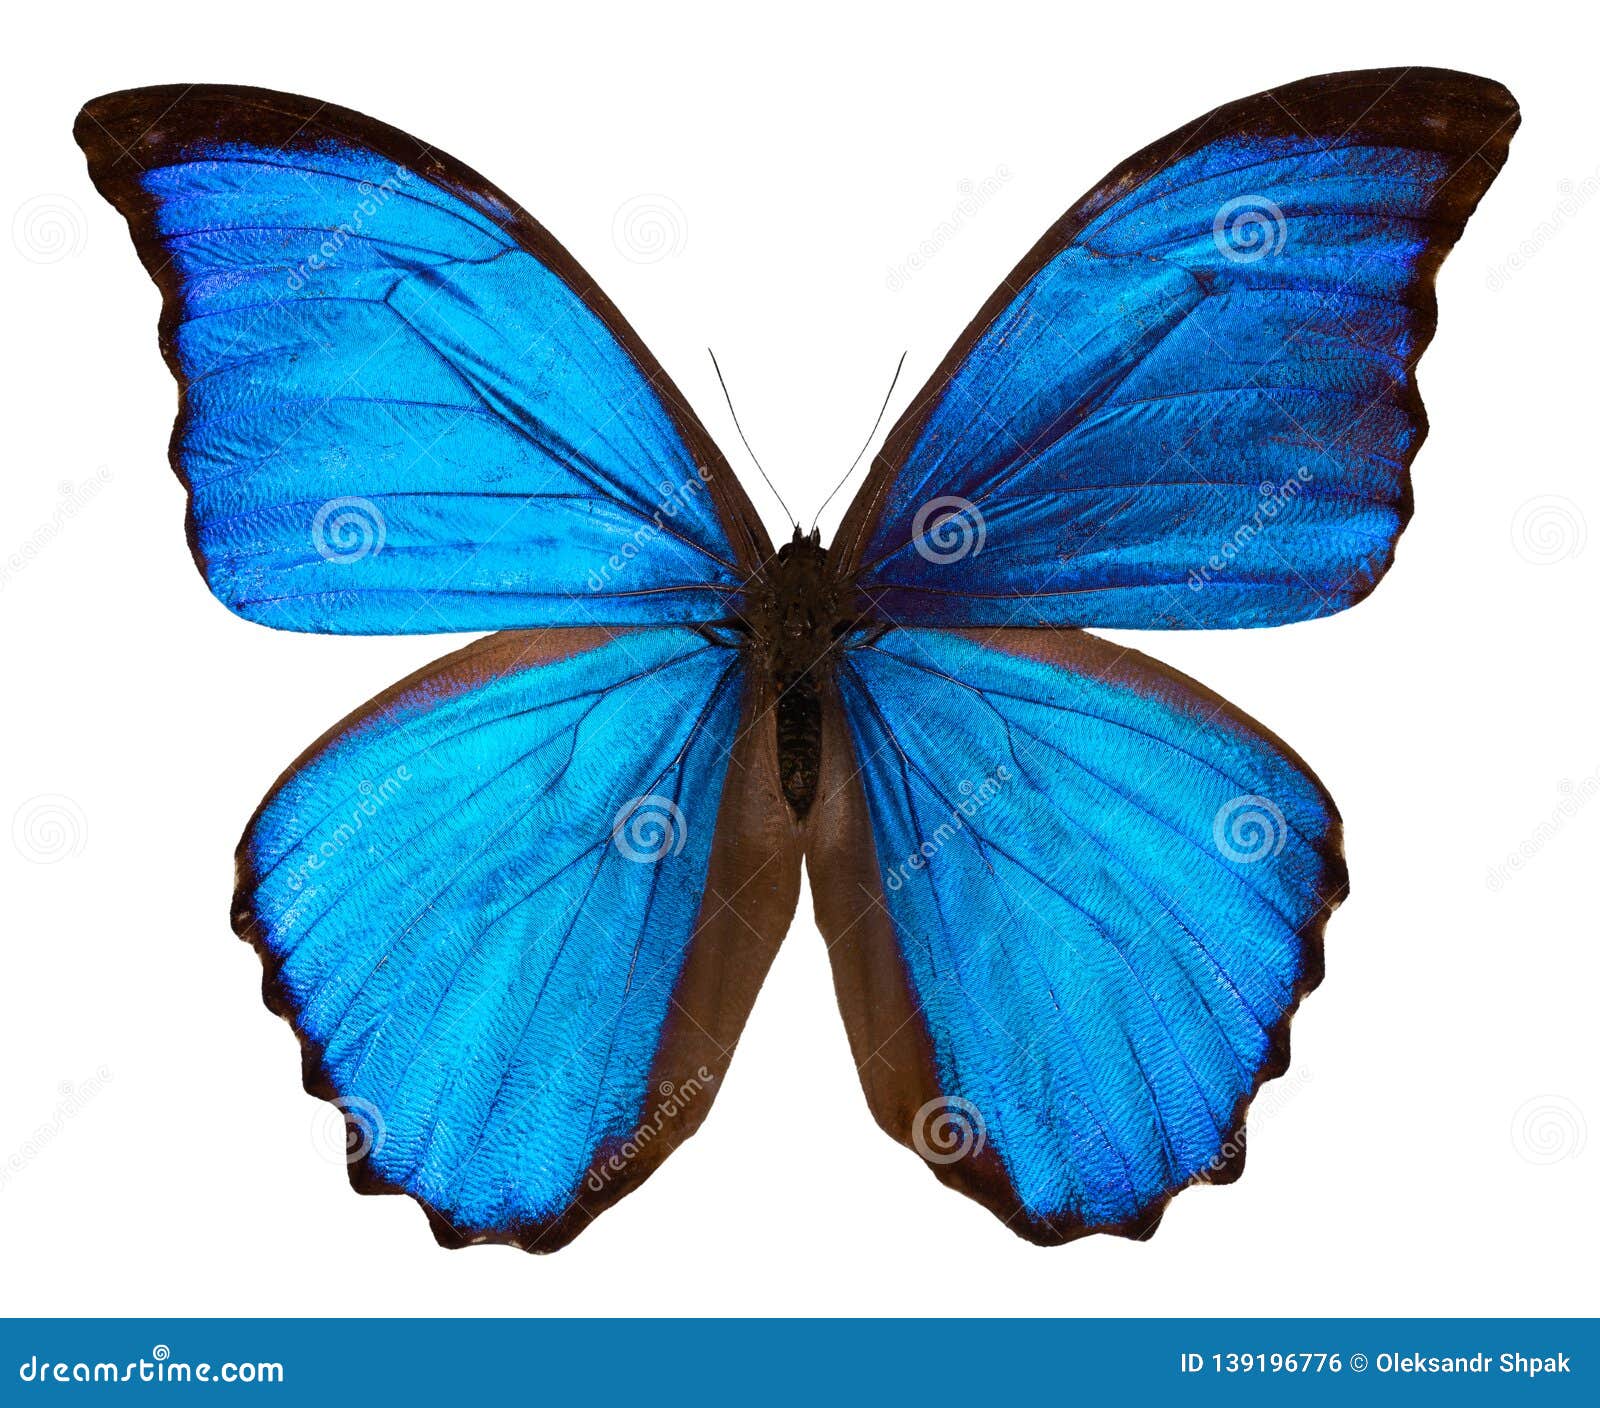 Con bướm xanh là loài côn trùng tuyệt đẹp và đầy mộng mơ. Chúng luôn là nguồn cảm hứng vô tận cho bất kỳ ai yêu thích thiên nhiên và sự đa dạng sinh học. Hãy chiêm ngưỡng hình ảnh về một con bướm xanh cực kỳ dịu dàng và thơ mộng này!